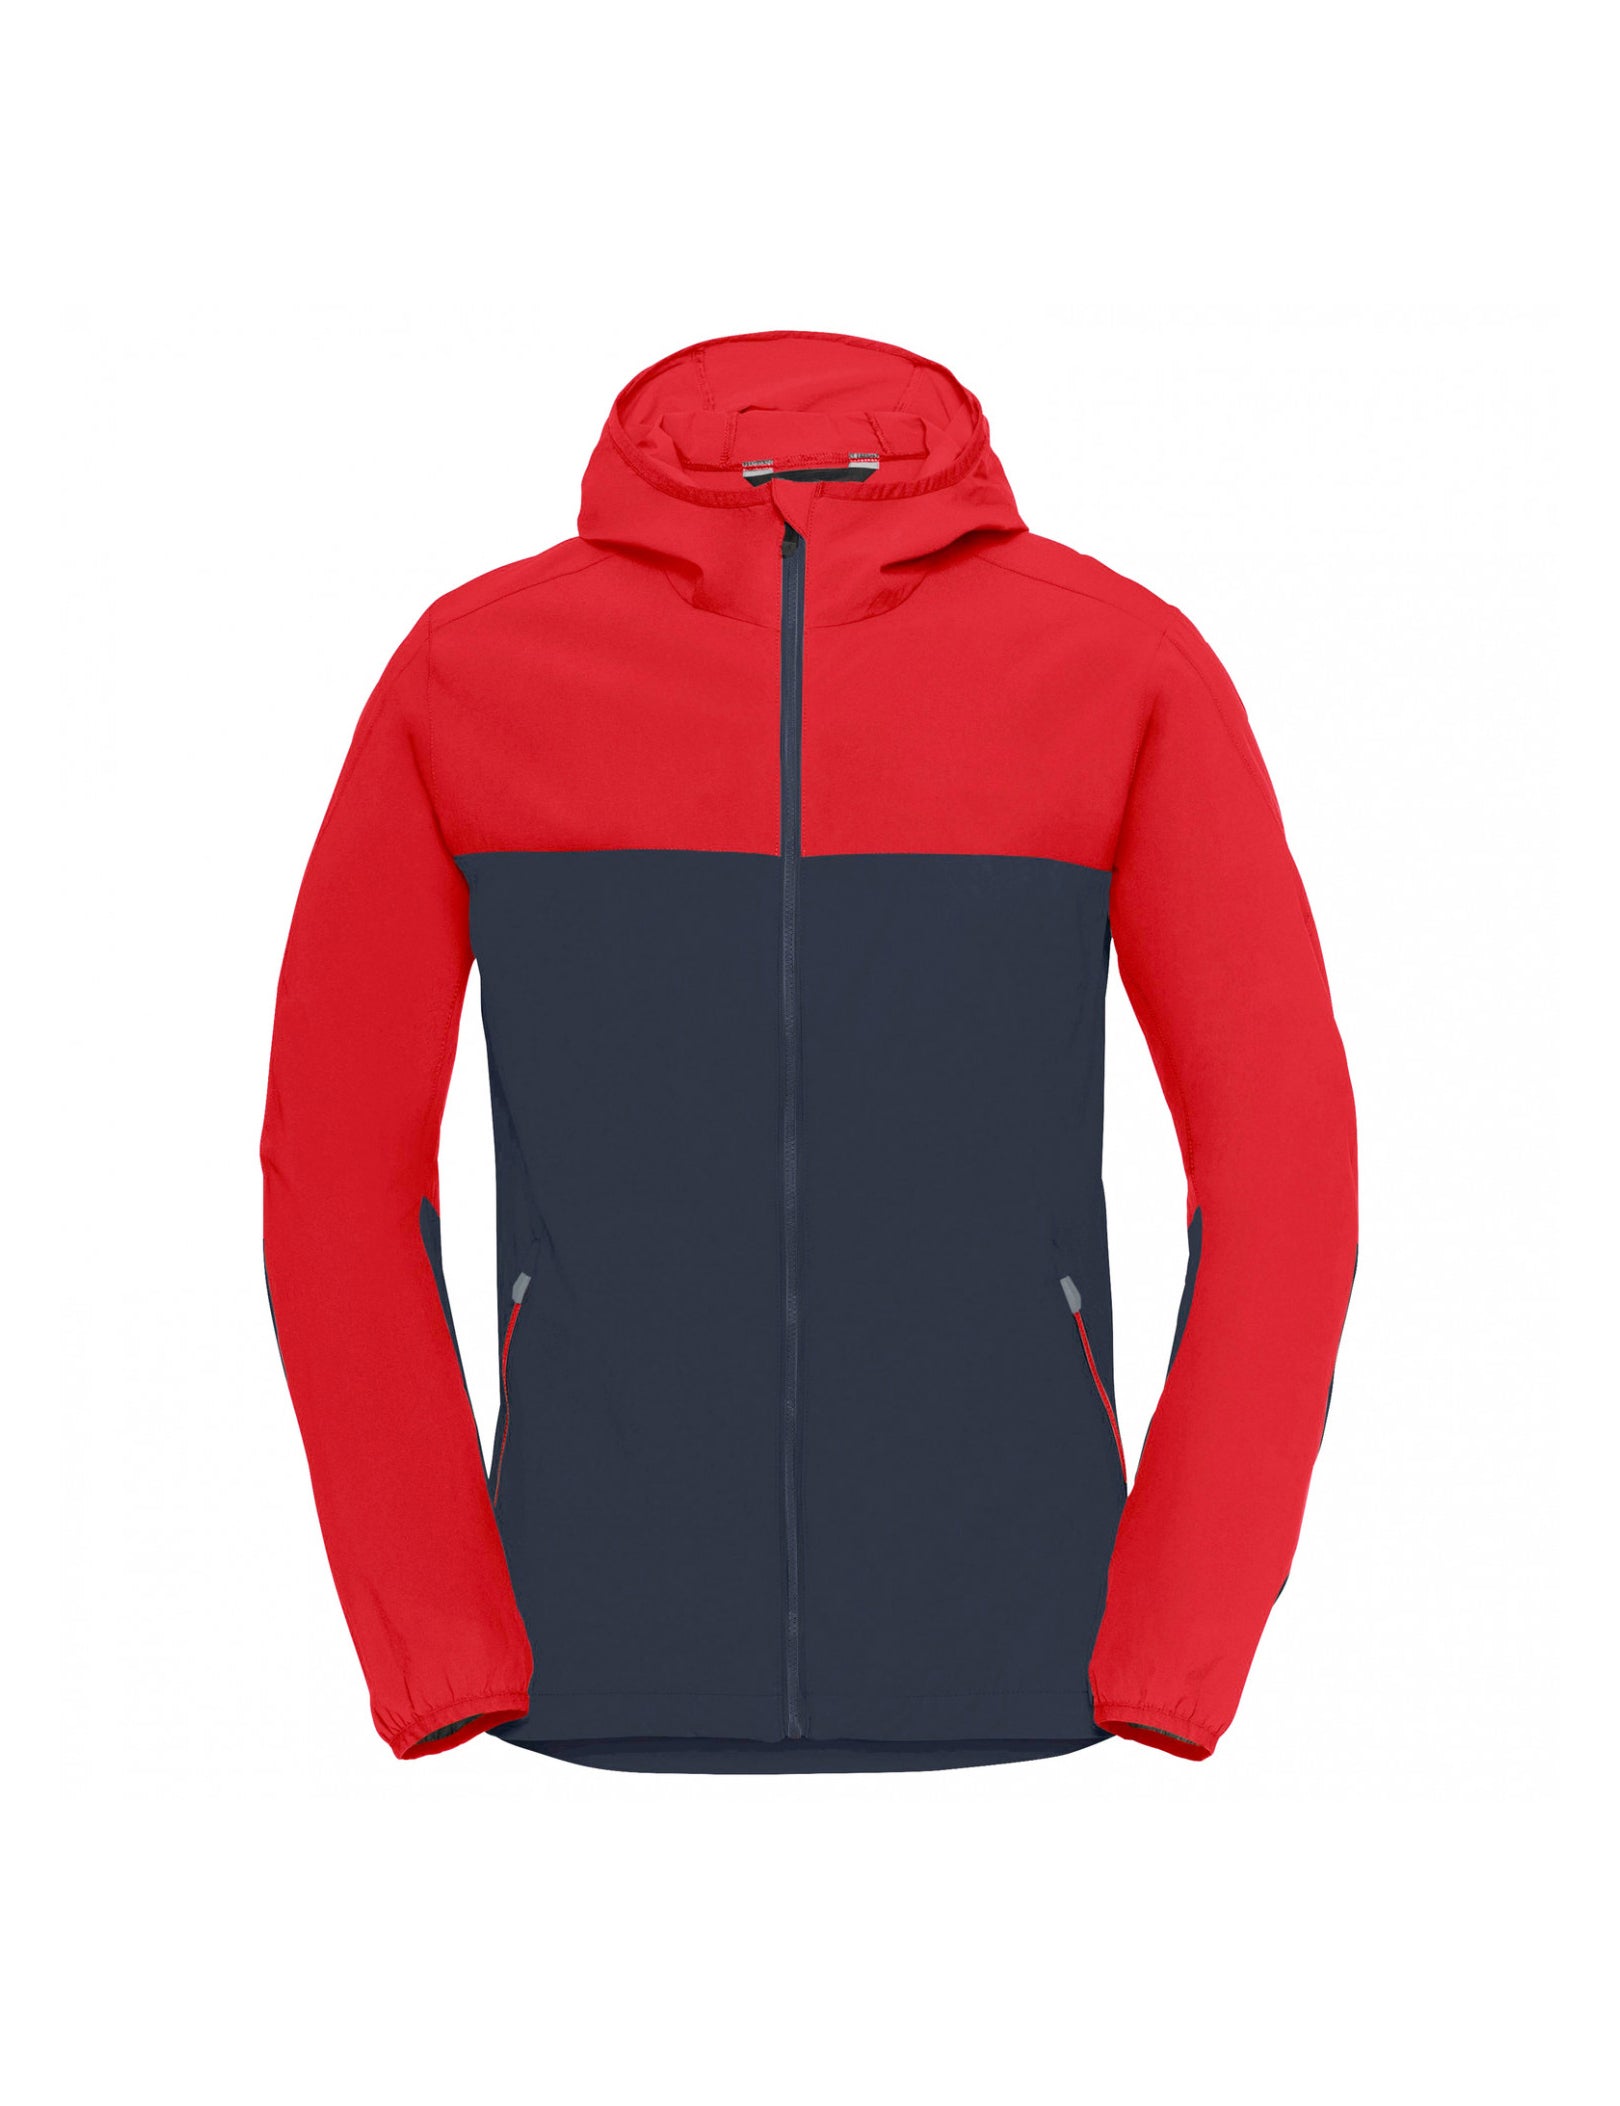 – Reliable Jacket Waterproof Hiking Supplier Outdoor venedor-regal-blue-outdoor Wear